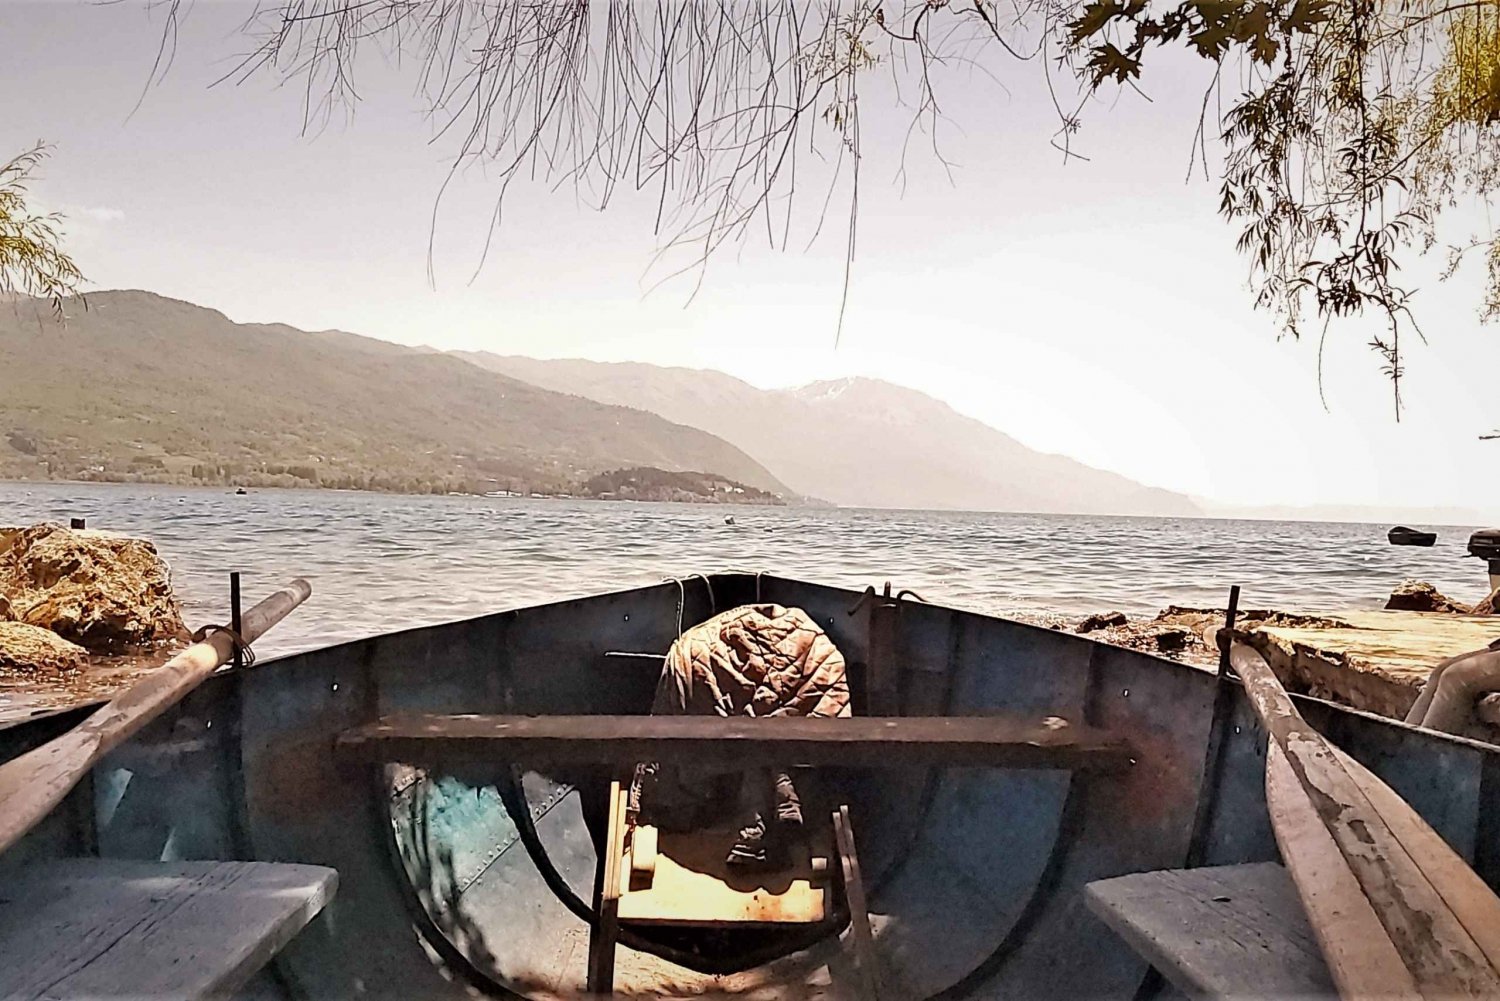 North Macedonia: Lake Ohrid and Saint Naum Tour from Tirana